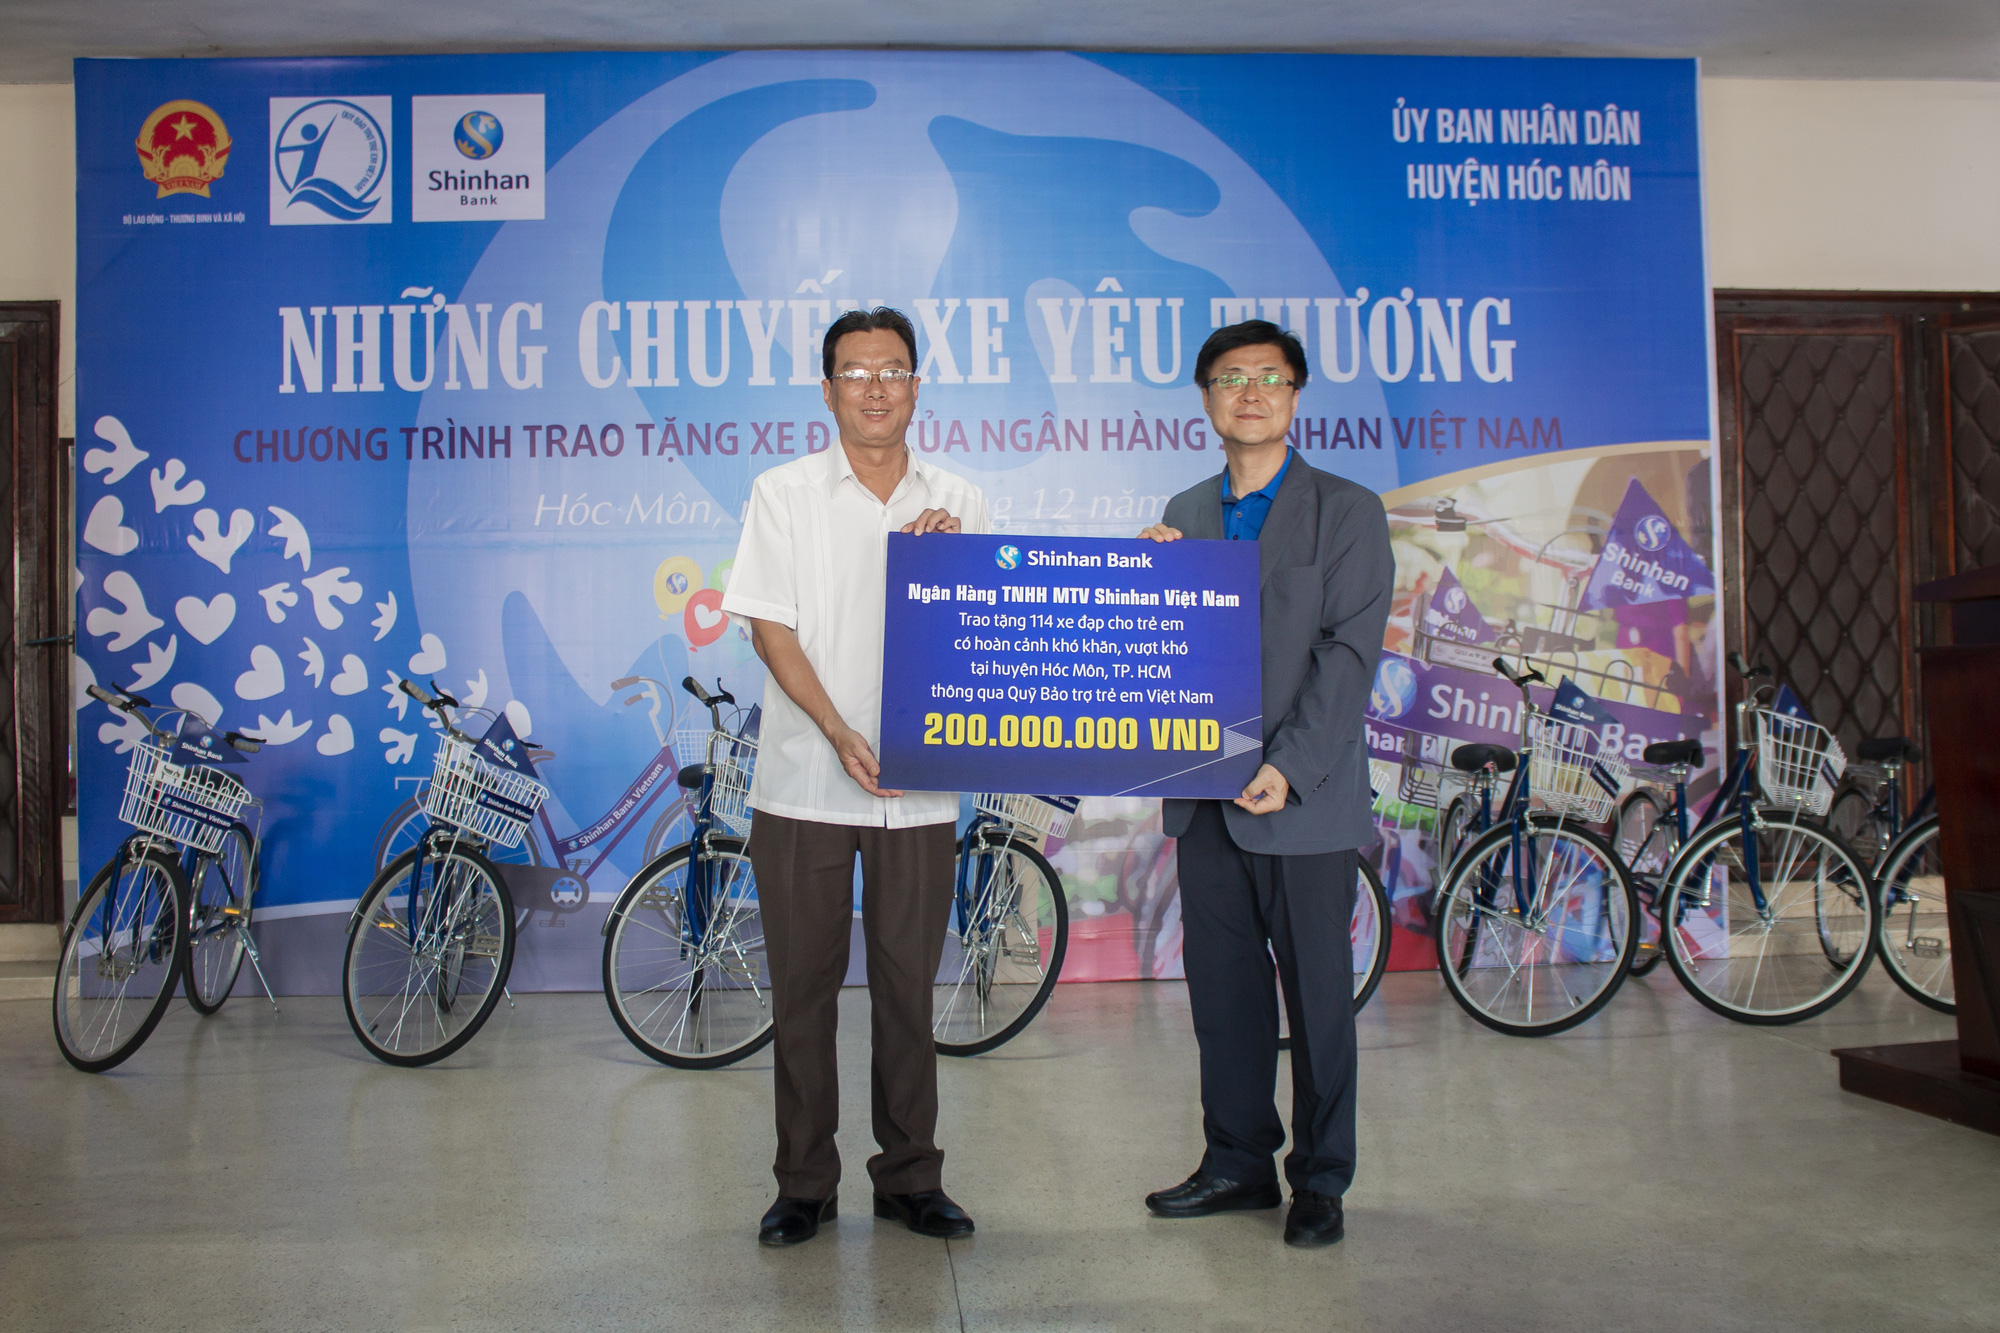 Ngân hàng Shinhan trao tặng xe đạp cho trẻ em nghèo huyện Hóc Môn, TP HCM